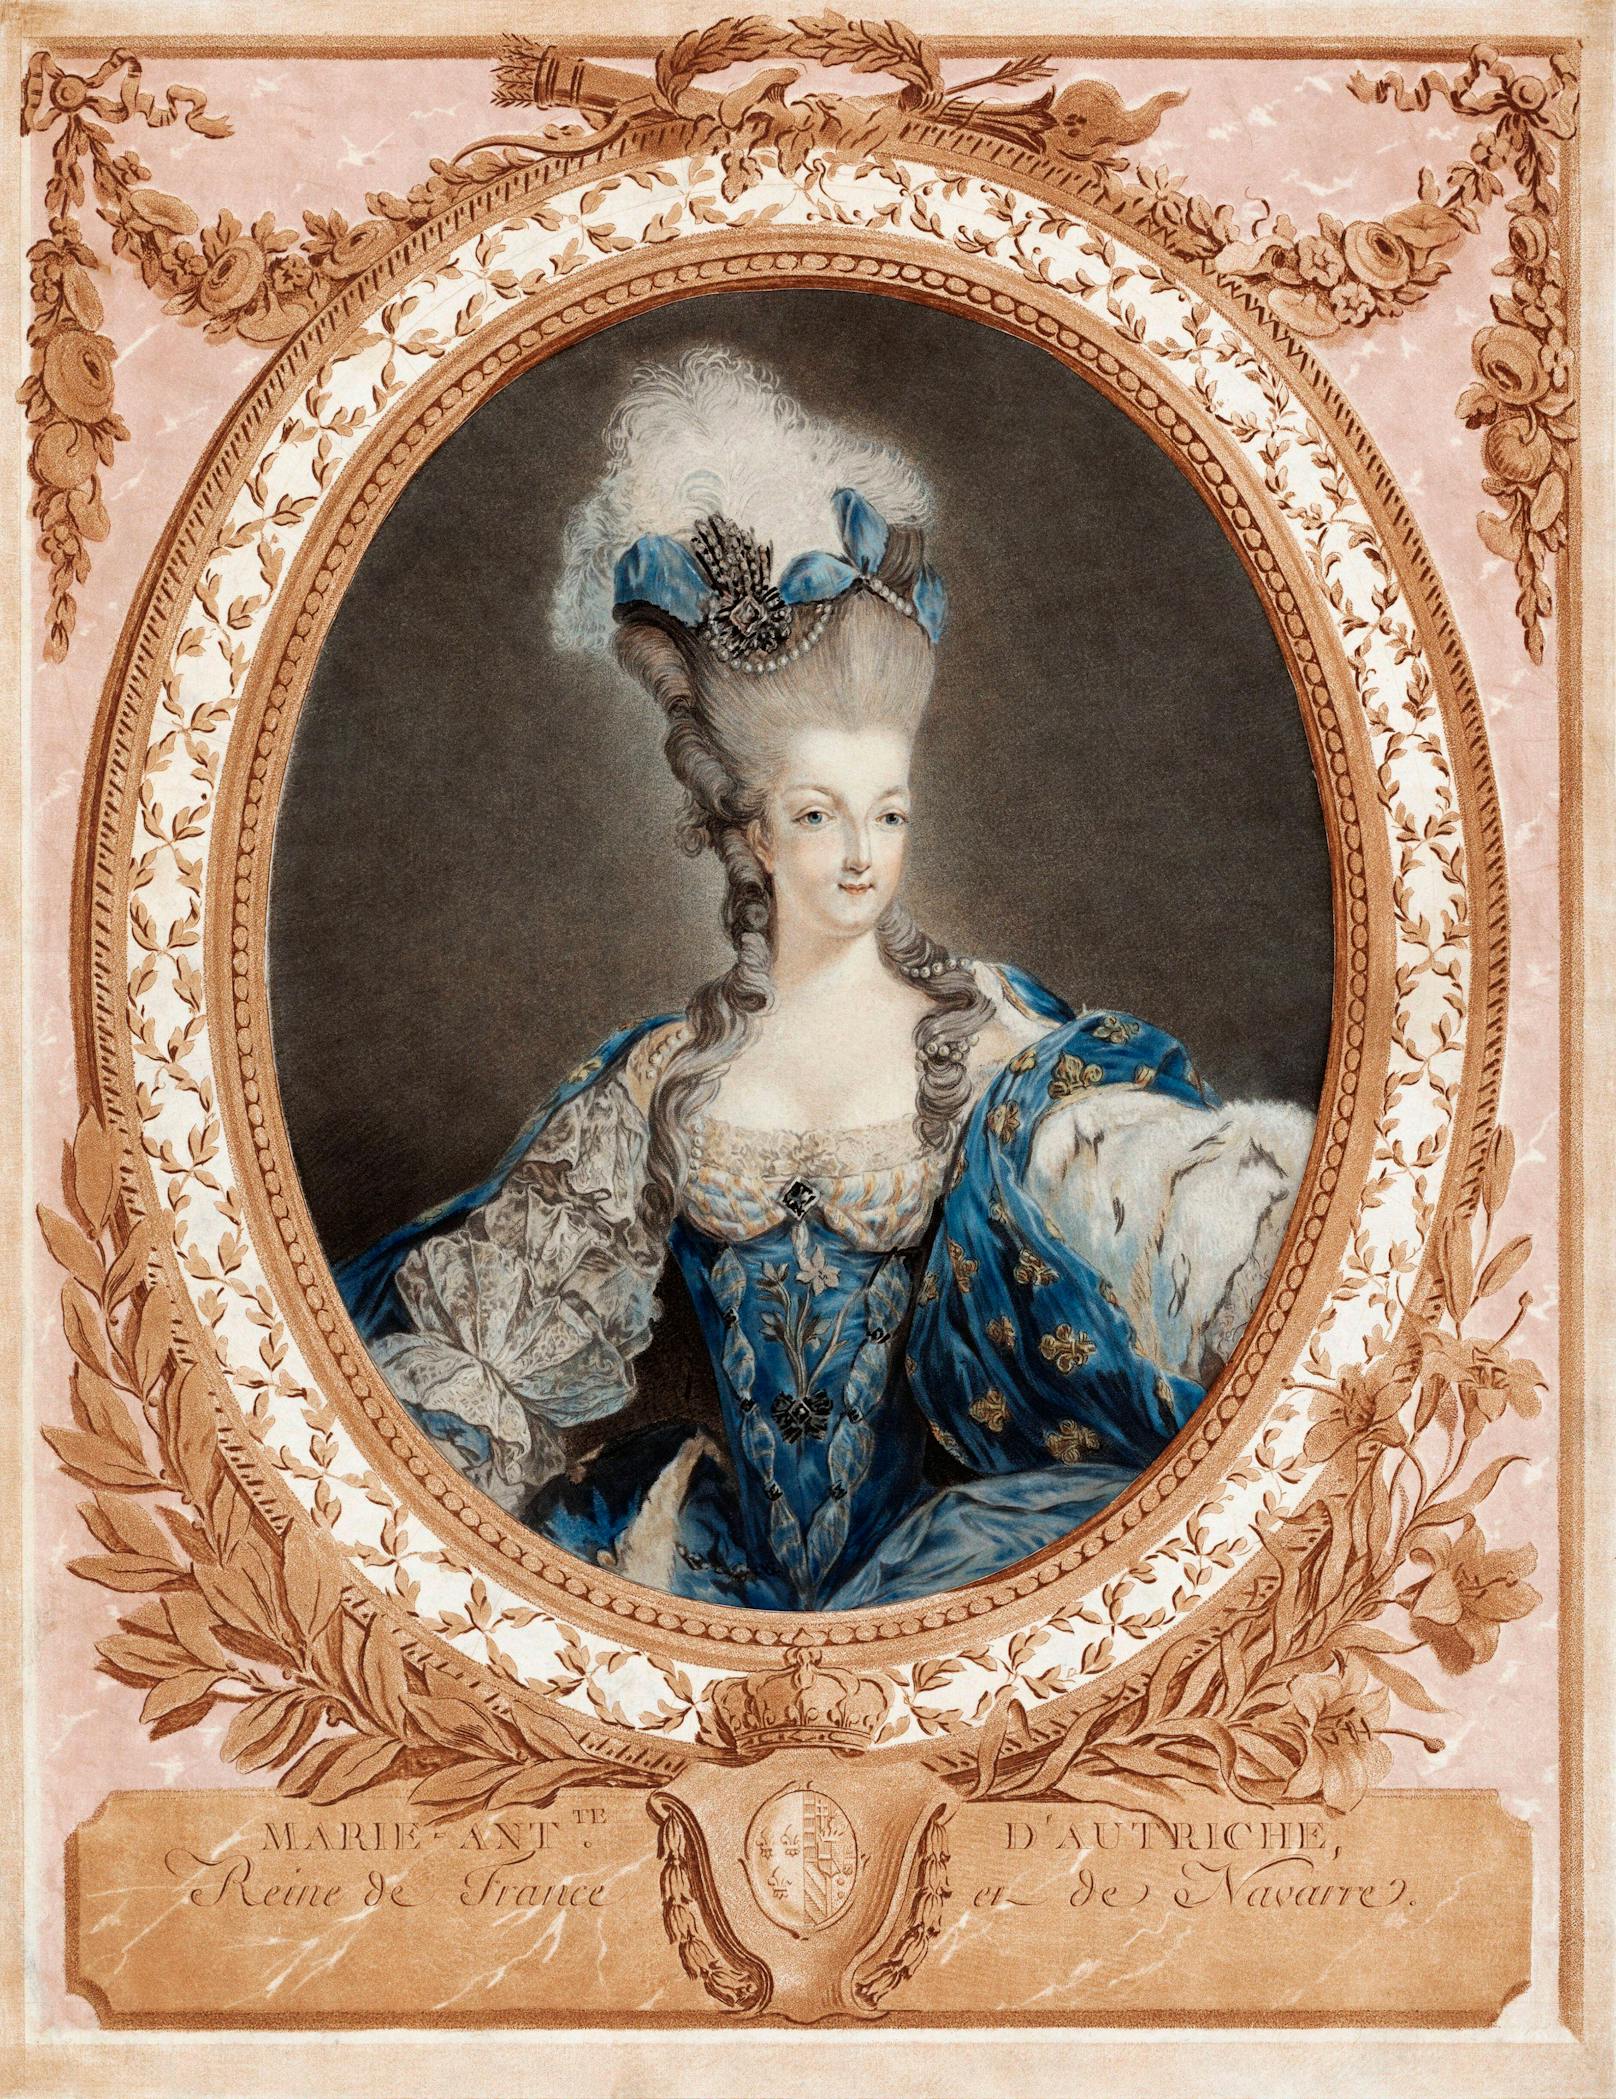 Die Habsburger Prinzessin Marie-Antoinette war Frau von König Ludwig XVI von Frankreich und auch die letzte Königin Frankreichs. Nach ihrer Hinrichtung 1793 in der Französischen Revolution verschwanden viele ihrer Habseligkeiten. Nur noch wenige sind erhalten. Dafür werden auch heutzutage noch Rekordpreise bezahlt.